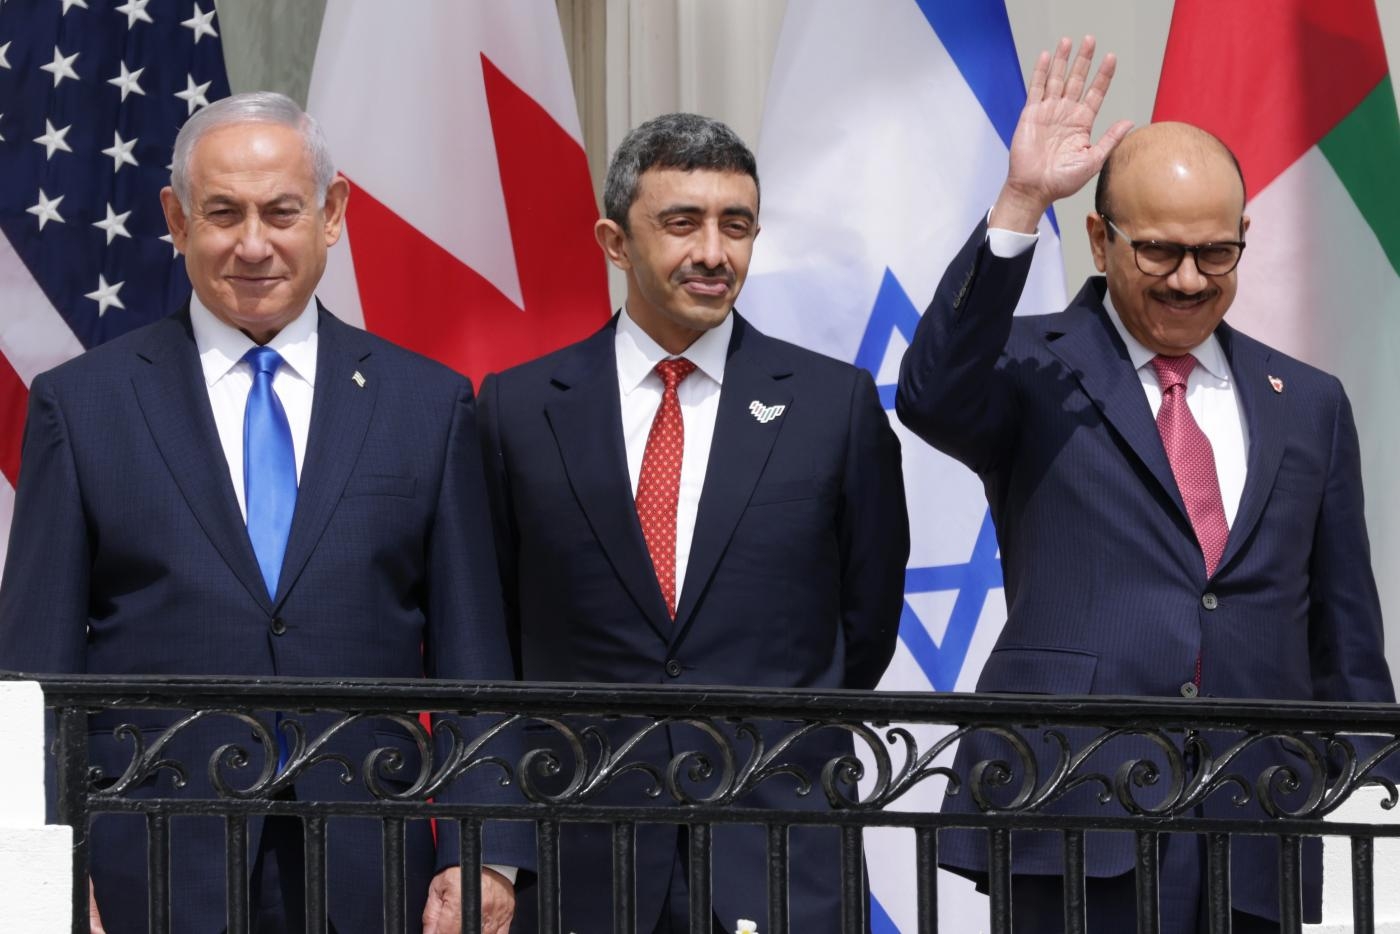 Le Premier ministre israélien ainsi que les ministres des Affaires étrangères émirati et bahreïni participent à la cérémonie de signature des accords d’Abraham à la Maison-Blanche, le 15 septembre (AFP)